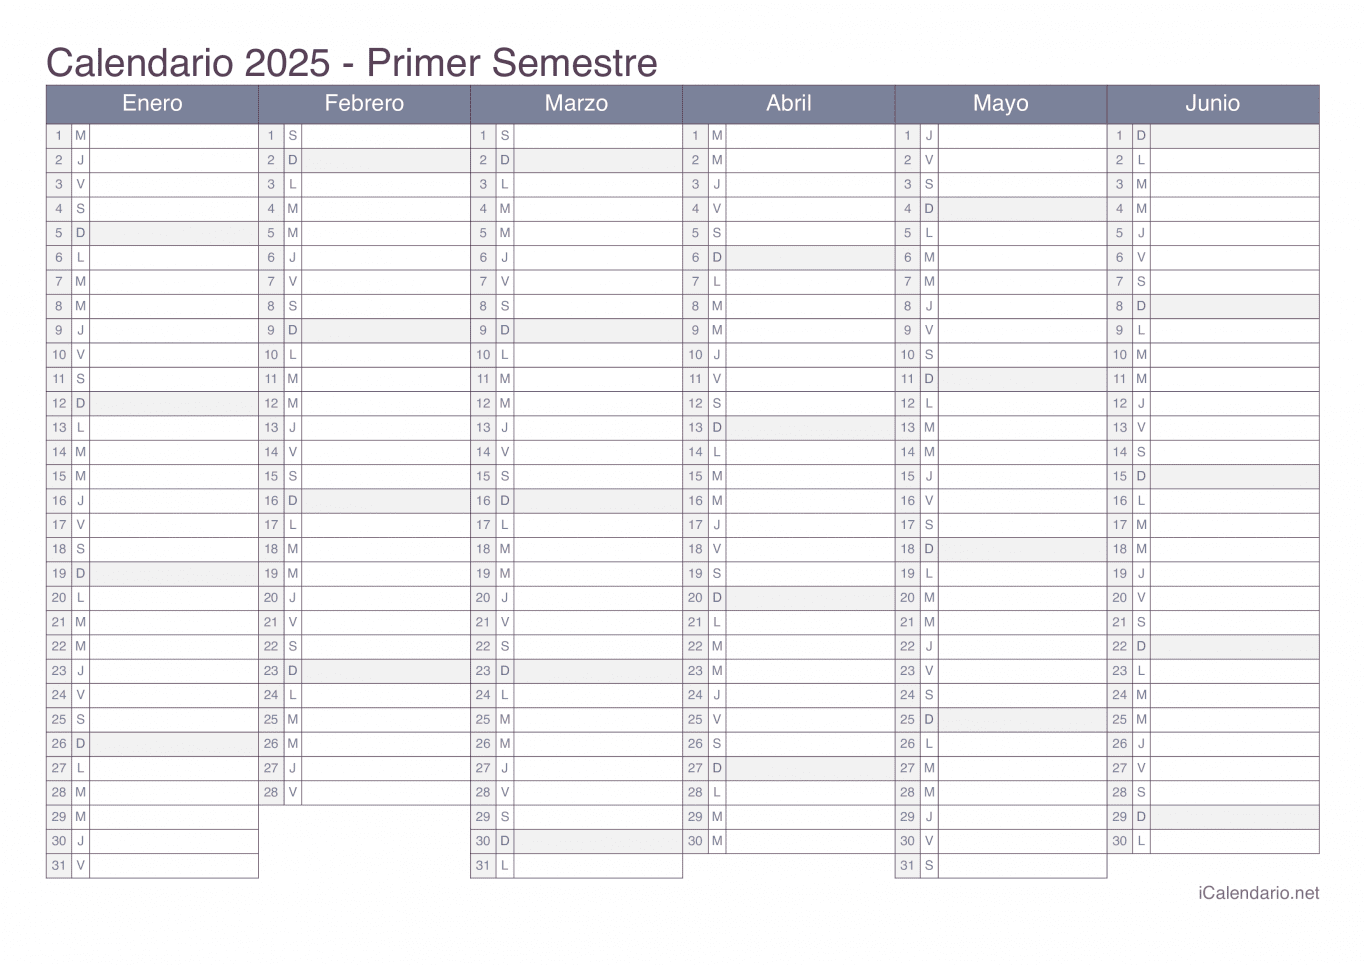 Calendario por semestre 2025 - Office